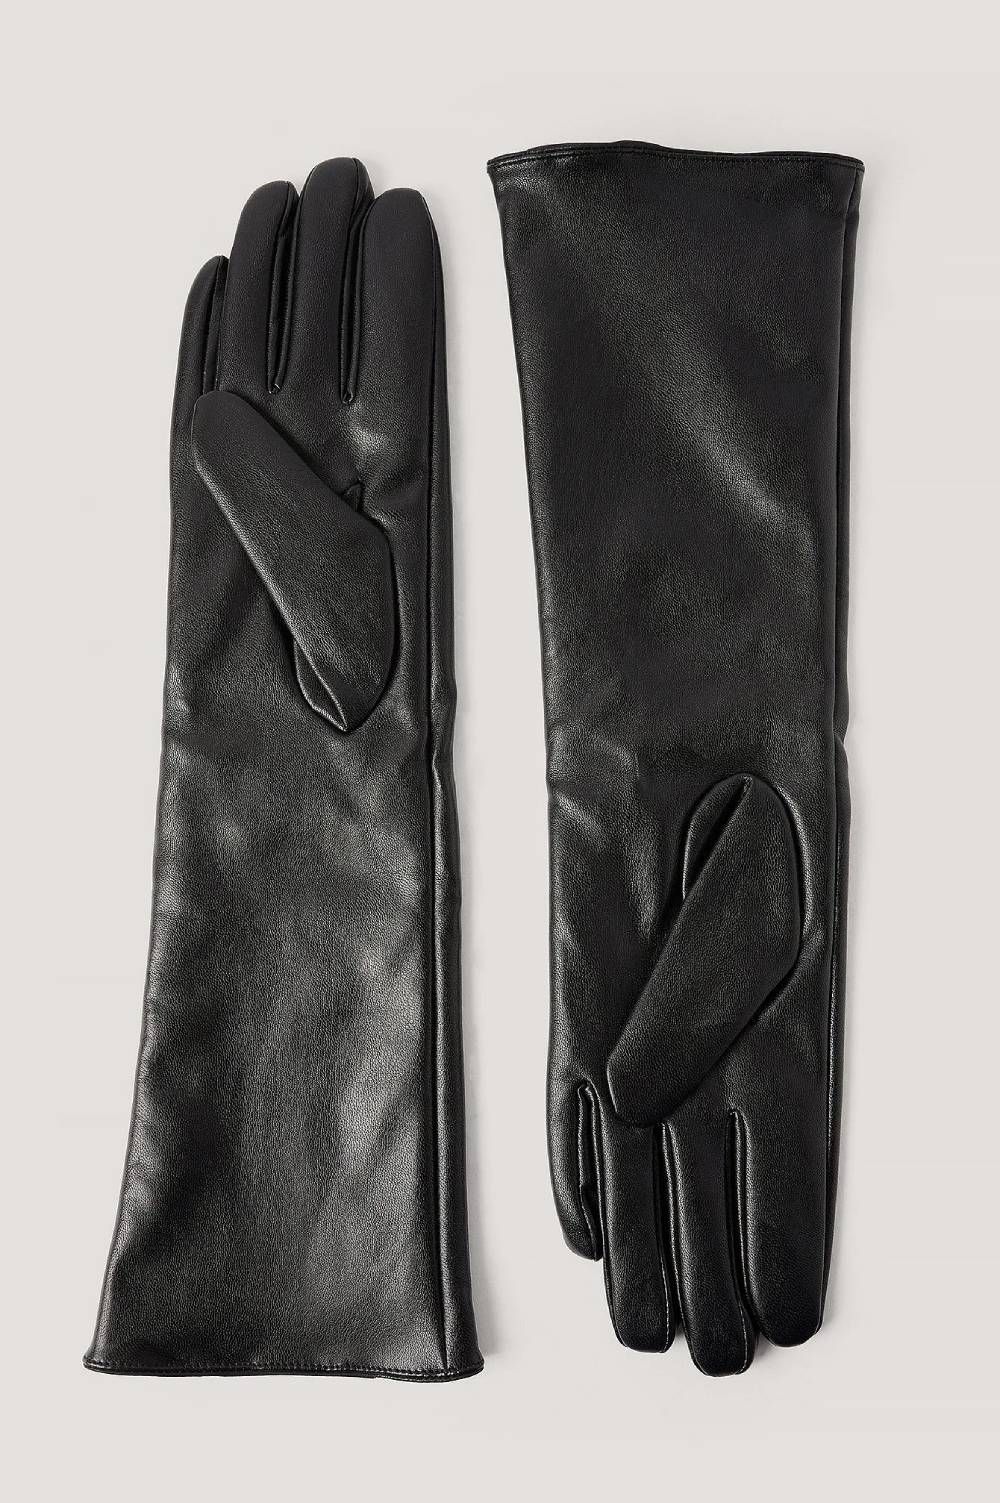 Lederen lange manchet middeleeuwse handschoenen perfect passen premium kwaliteit zacht leer Accessoires Handschoenen & wanten Winterhandschoenen 